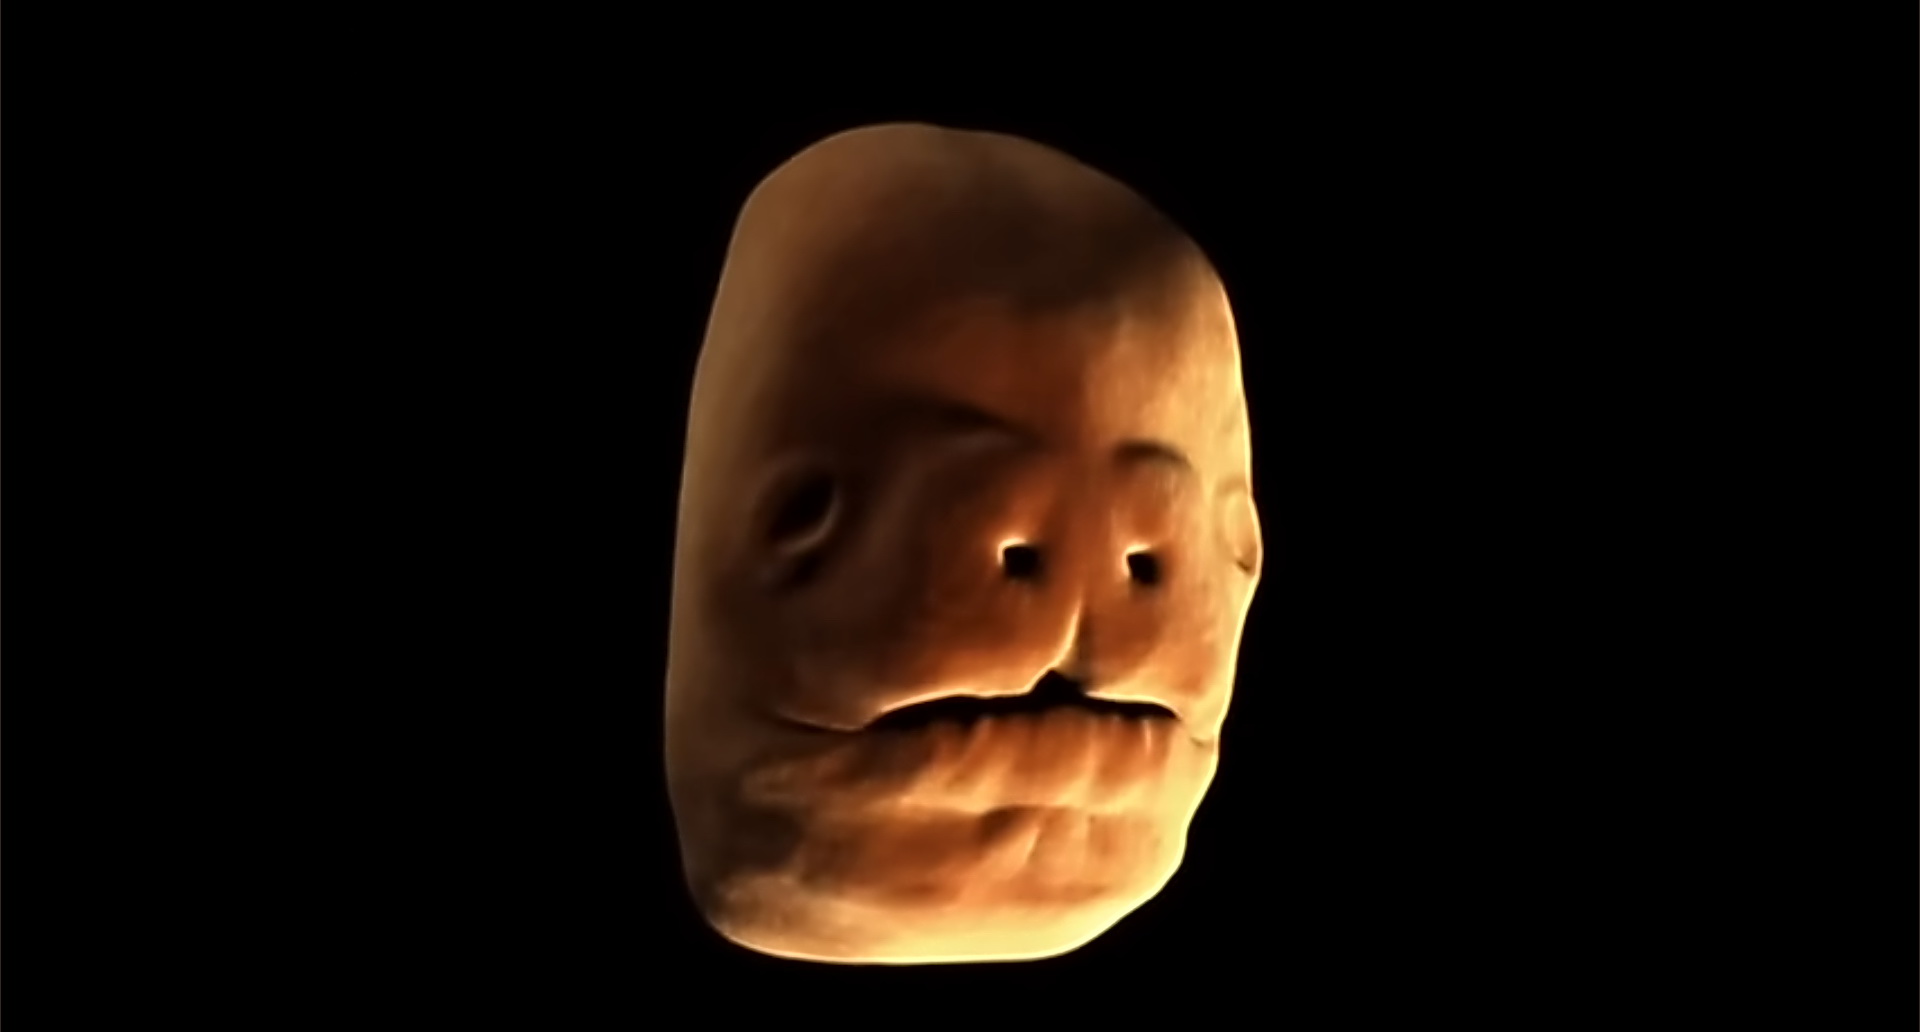 Imagen de un rostro humano durante la quinta semana de embarazo